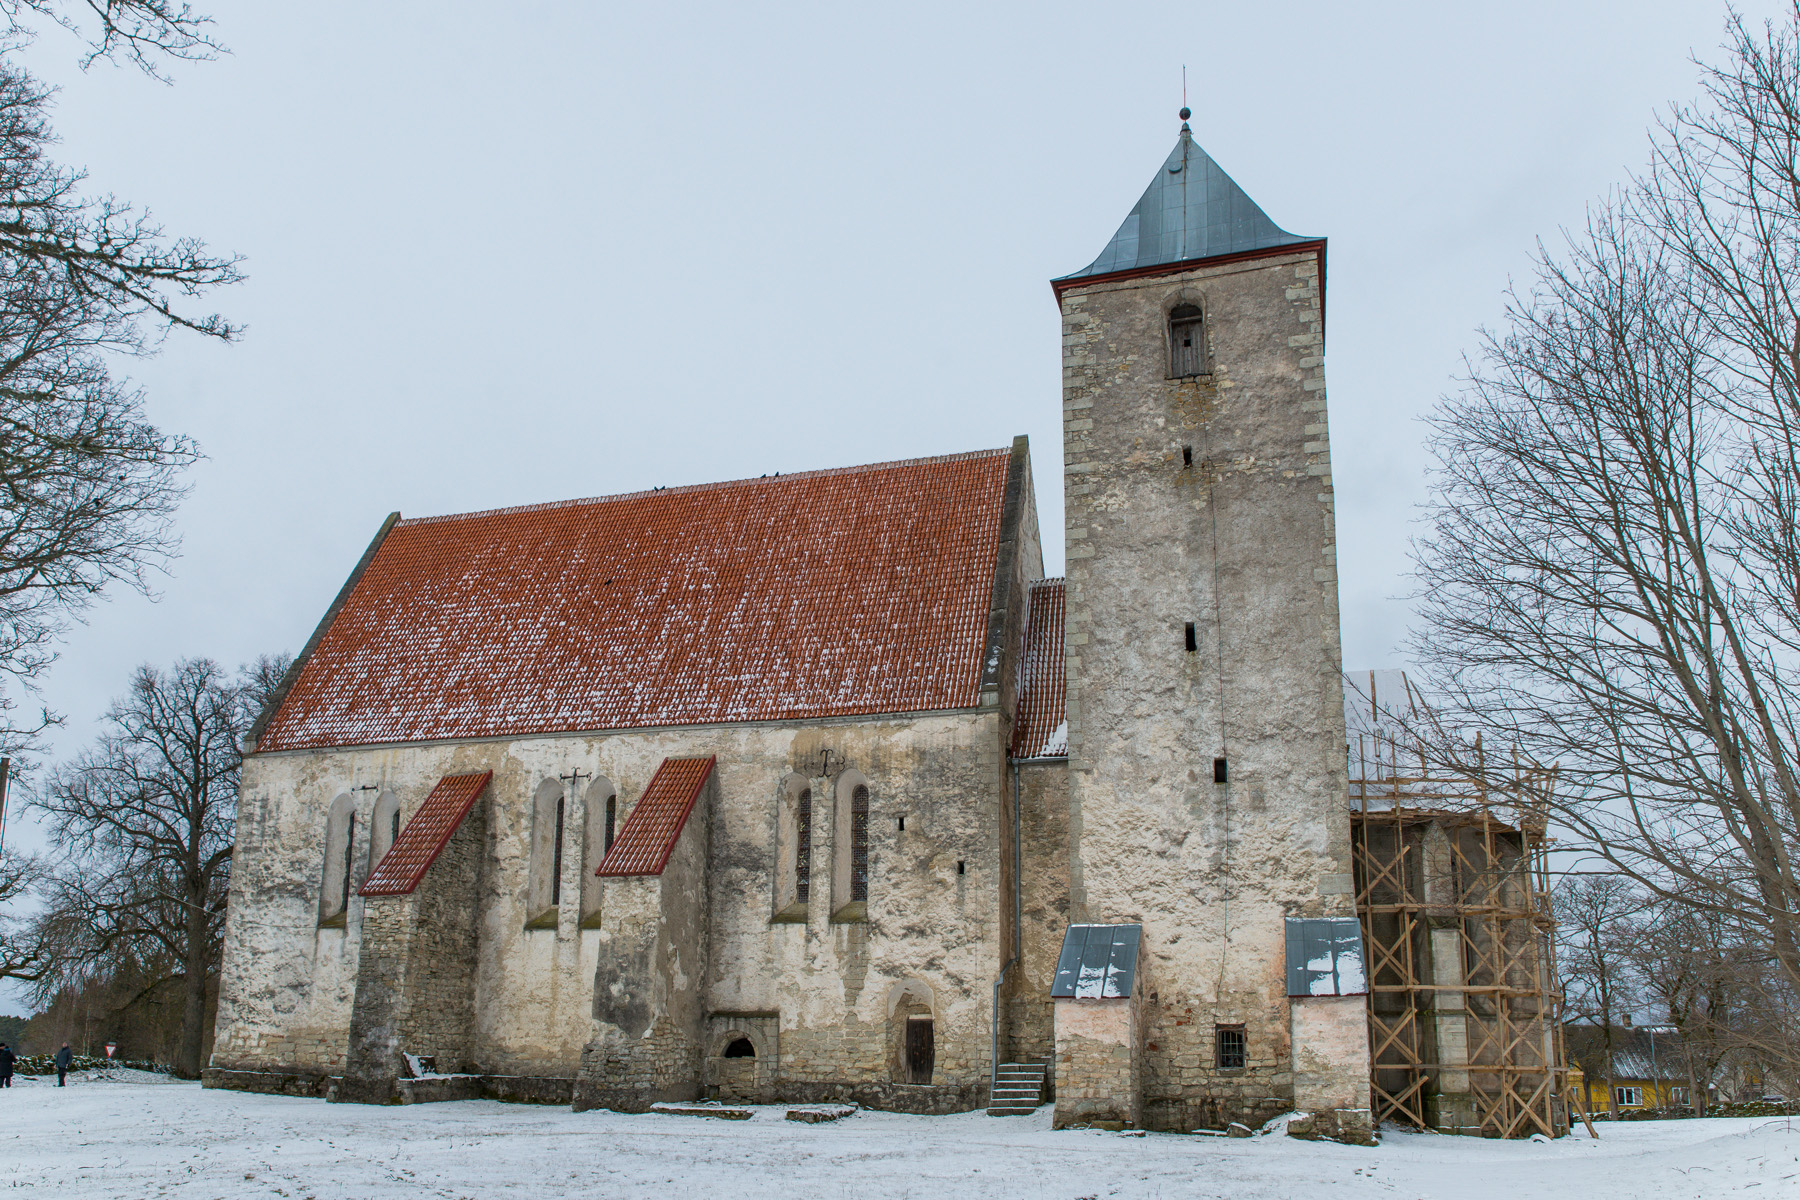 20160319-Saaremaa-319-Valjala-kirik.jpg - 18.-20. märts 2016. Saaremaa ringreis. Valjala kirik